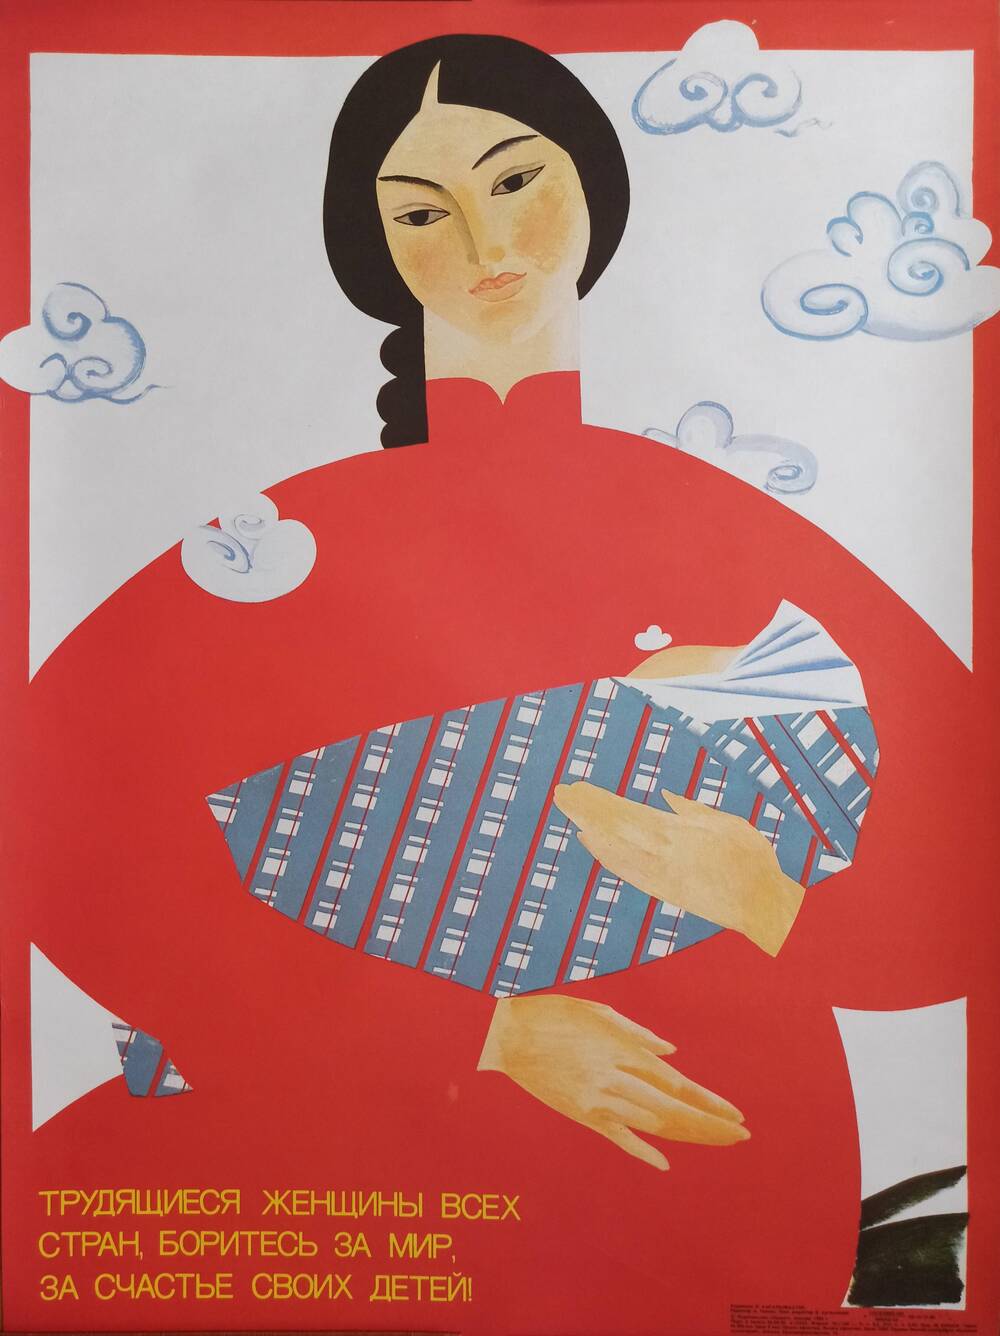 Плакат 
«Трудящиеся женщины всех стран, боритесь за мир,
за счастье своих детей!»